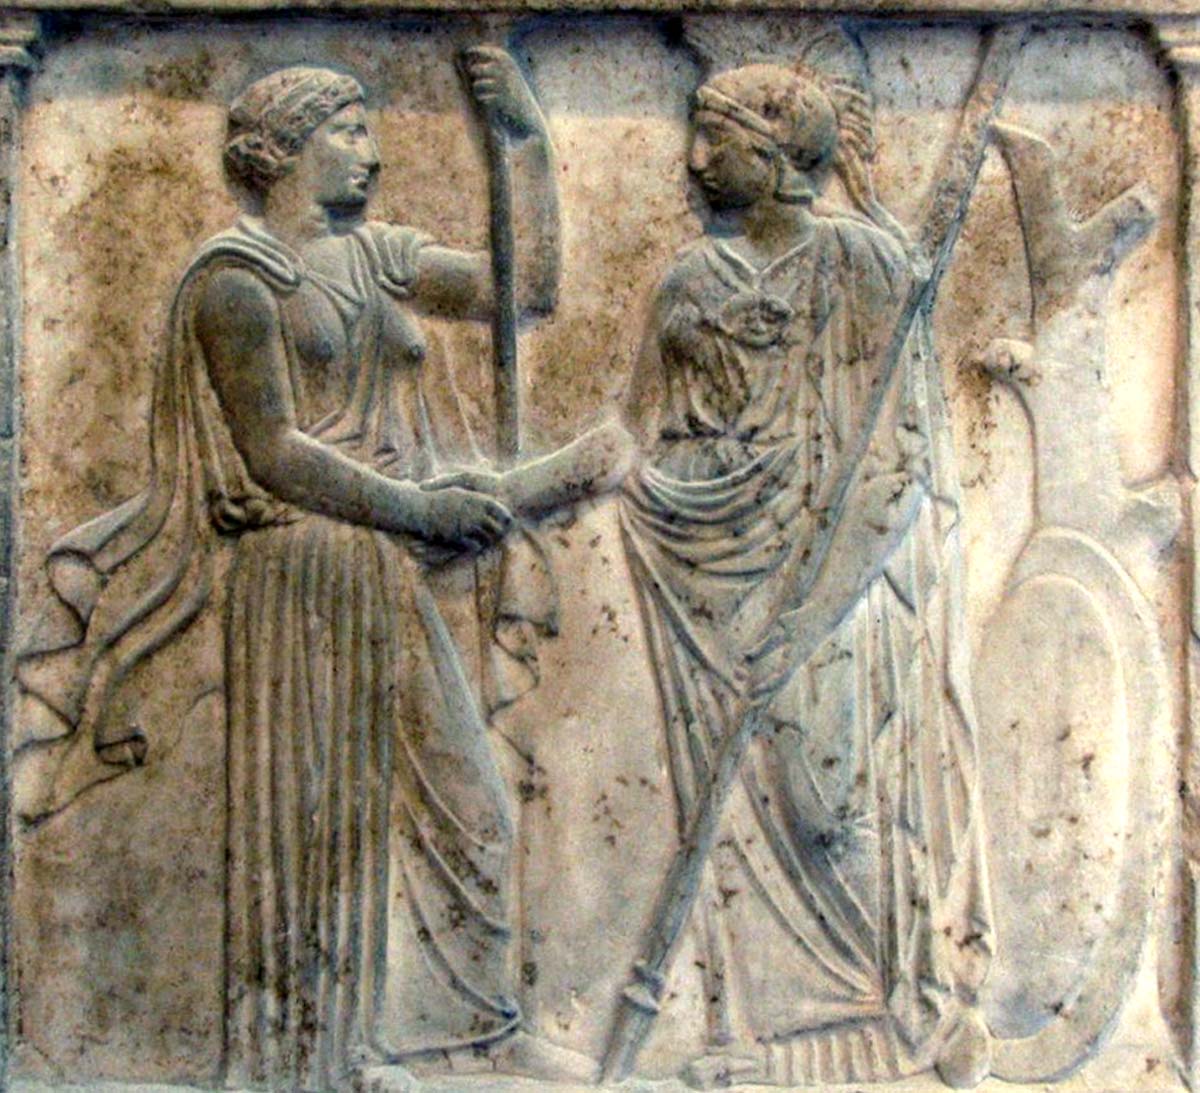 Era e Athena si stringono la mano simbolo di pace e amicizia (Museo Museo dell'Acropoli di Atene)